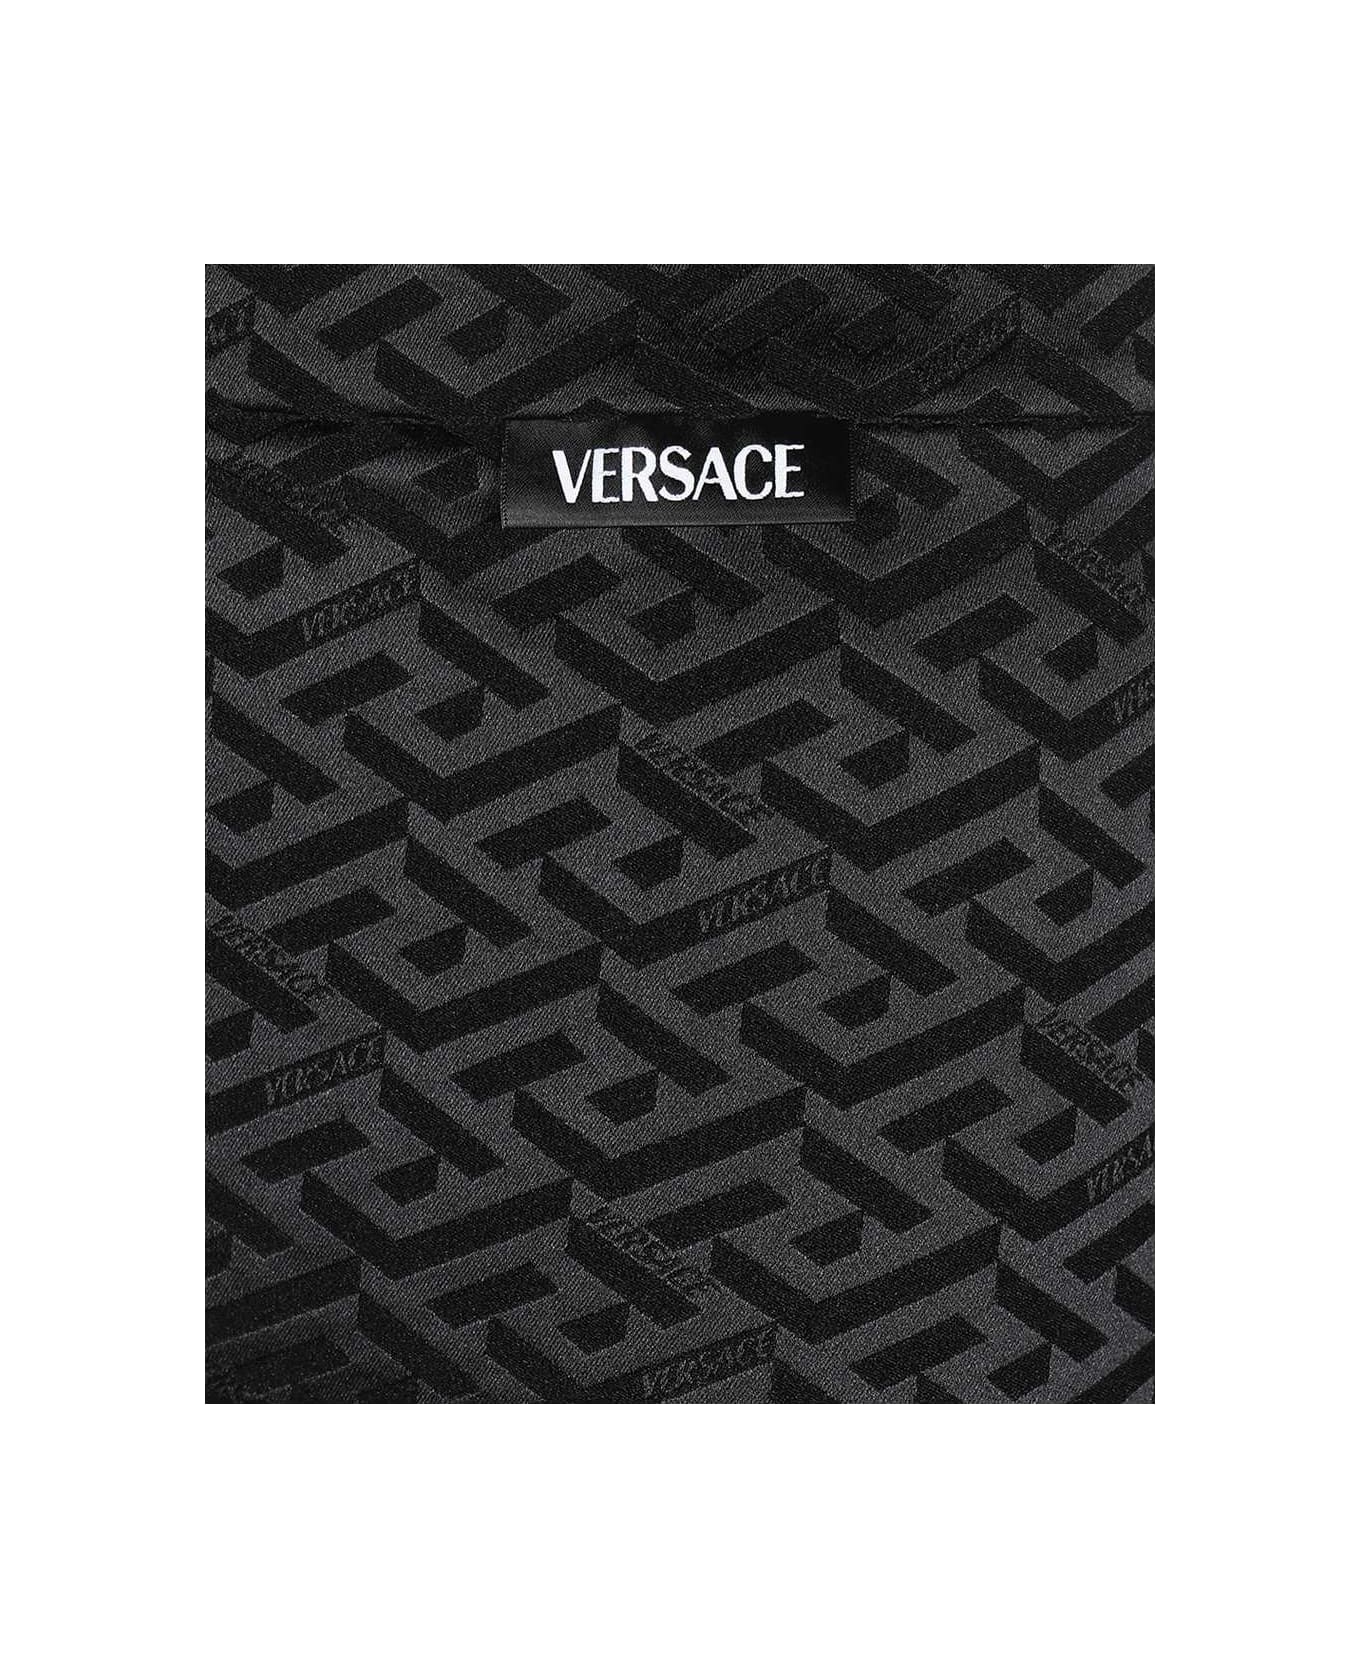 Versace Printed Leggings - black レギンス